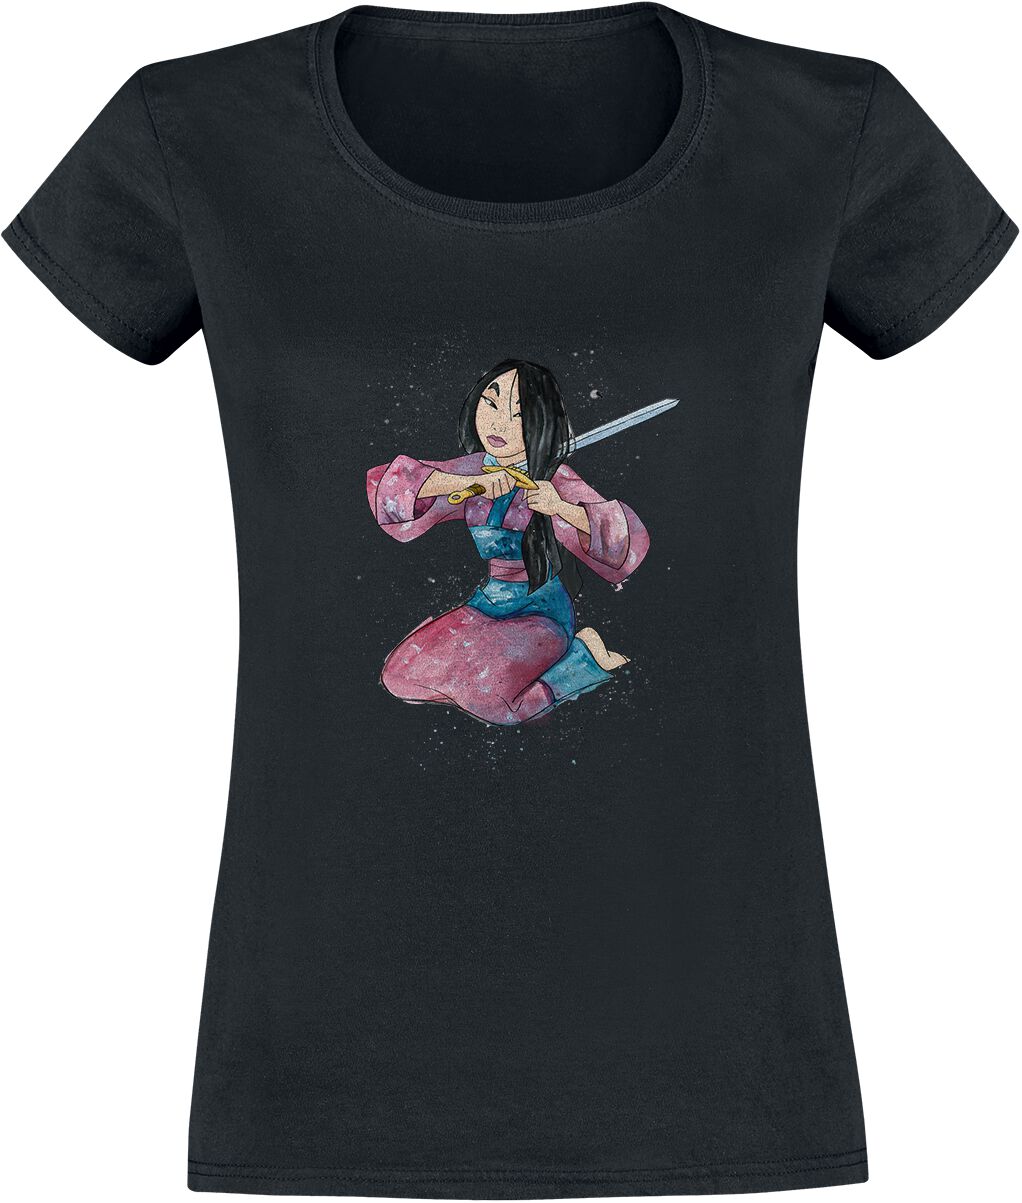 Mulan Chop T-Shirt black